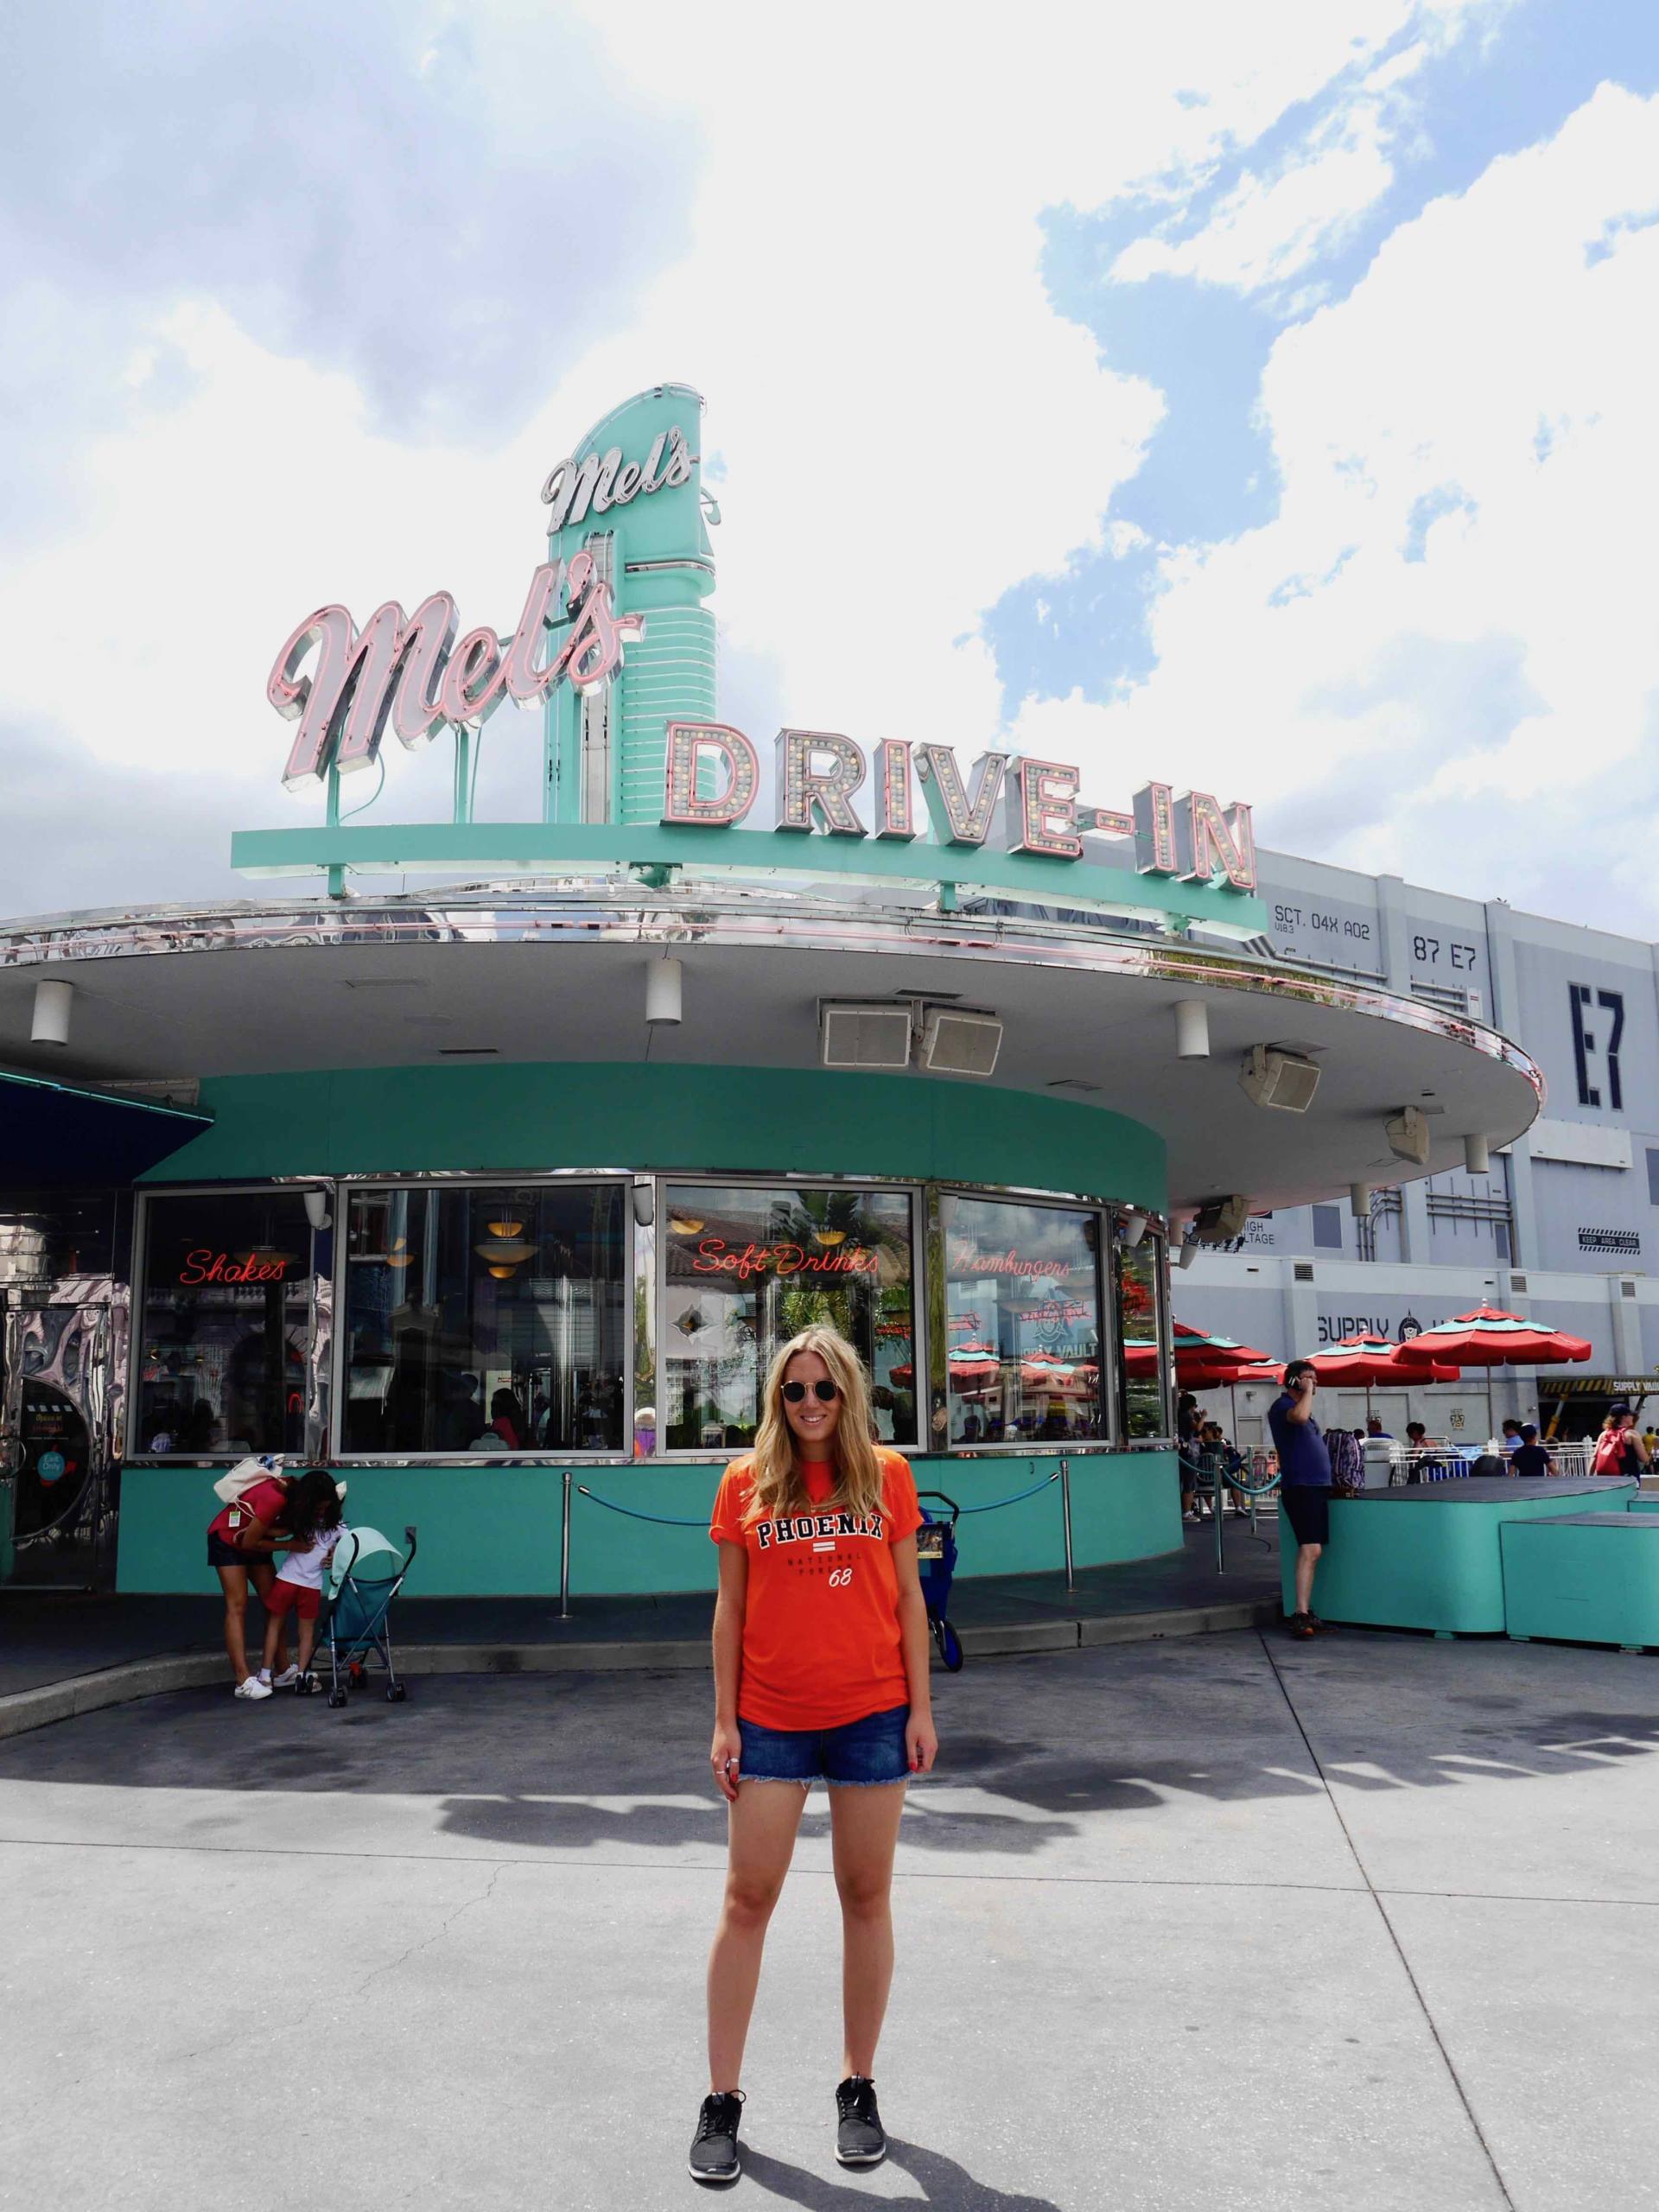 Cosas que debe saber antes de visitar Universal Studios Orlando | Travelista Jess Gibson Mels conducir en el restaurante